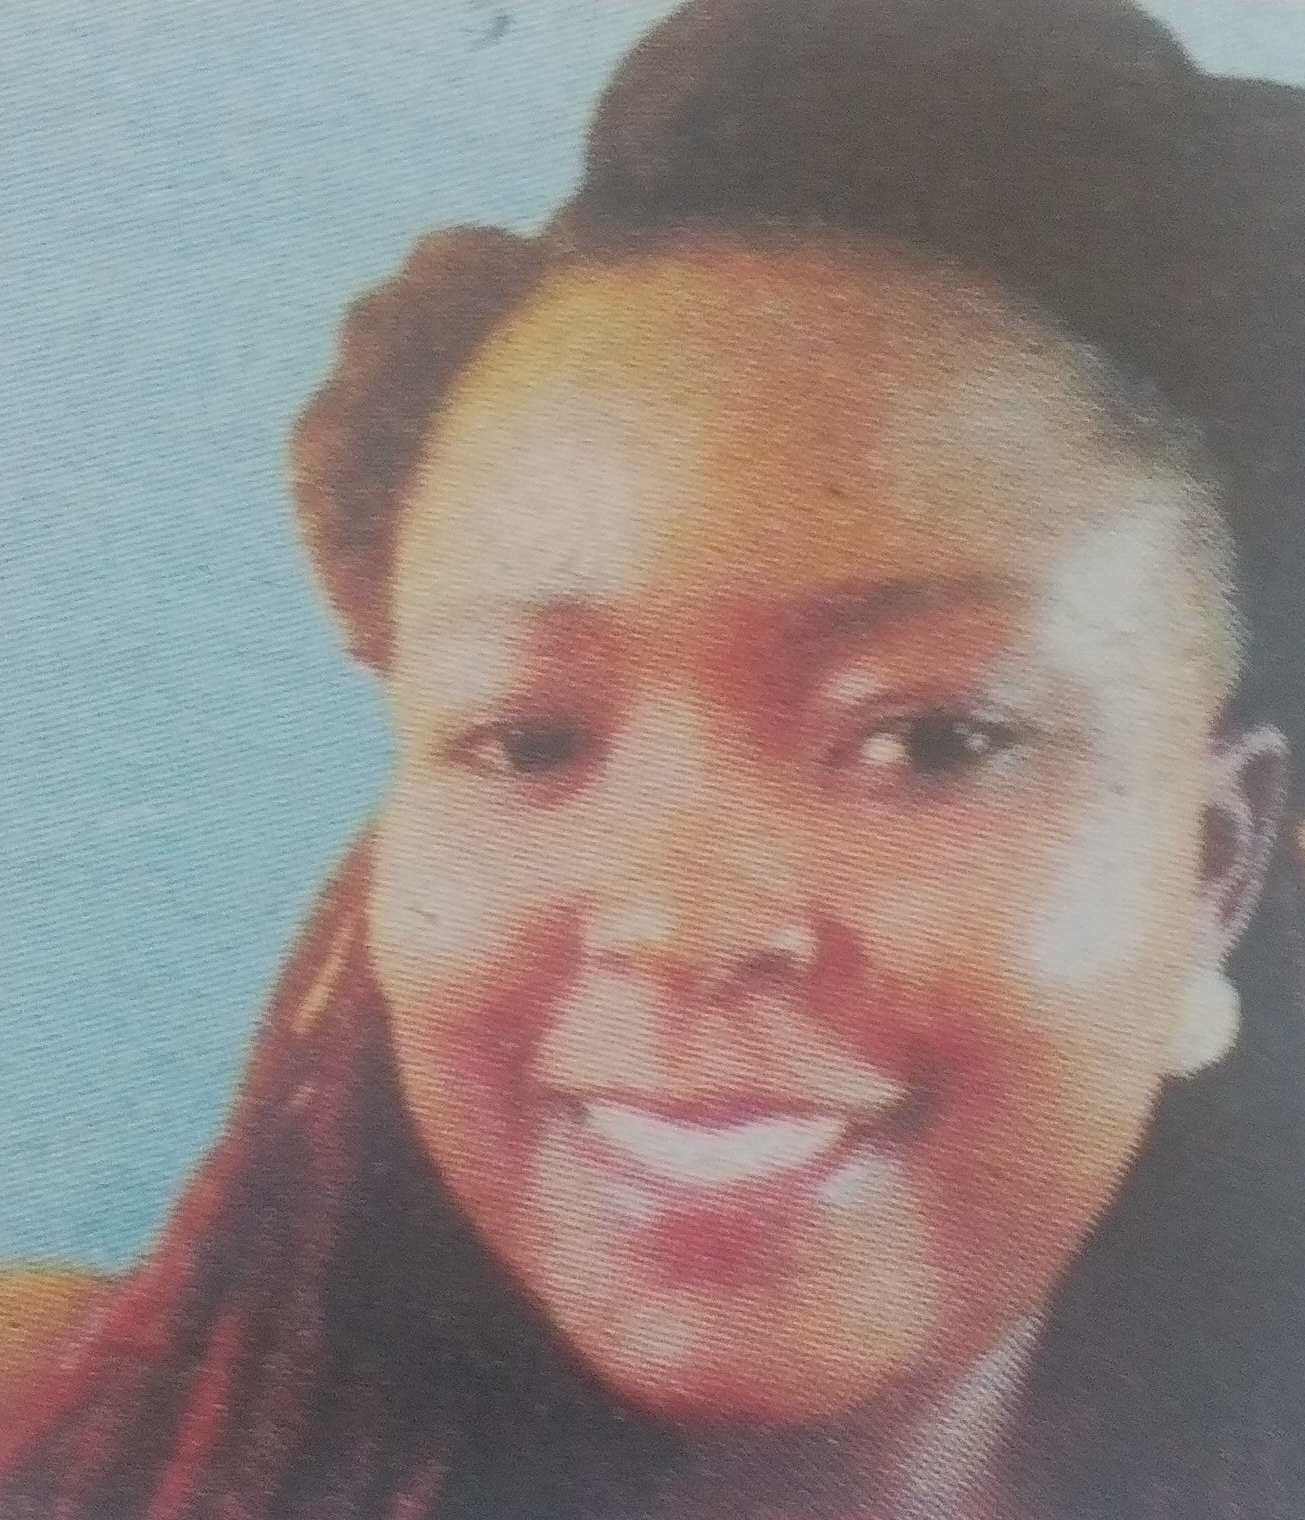 Obituary Image of Diana Achieng’ Onyango